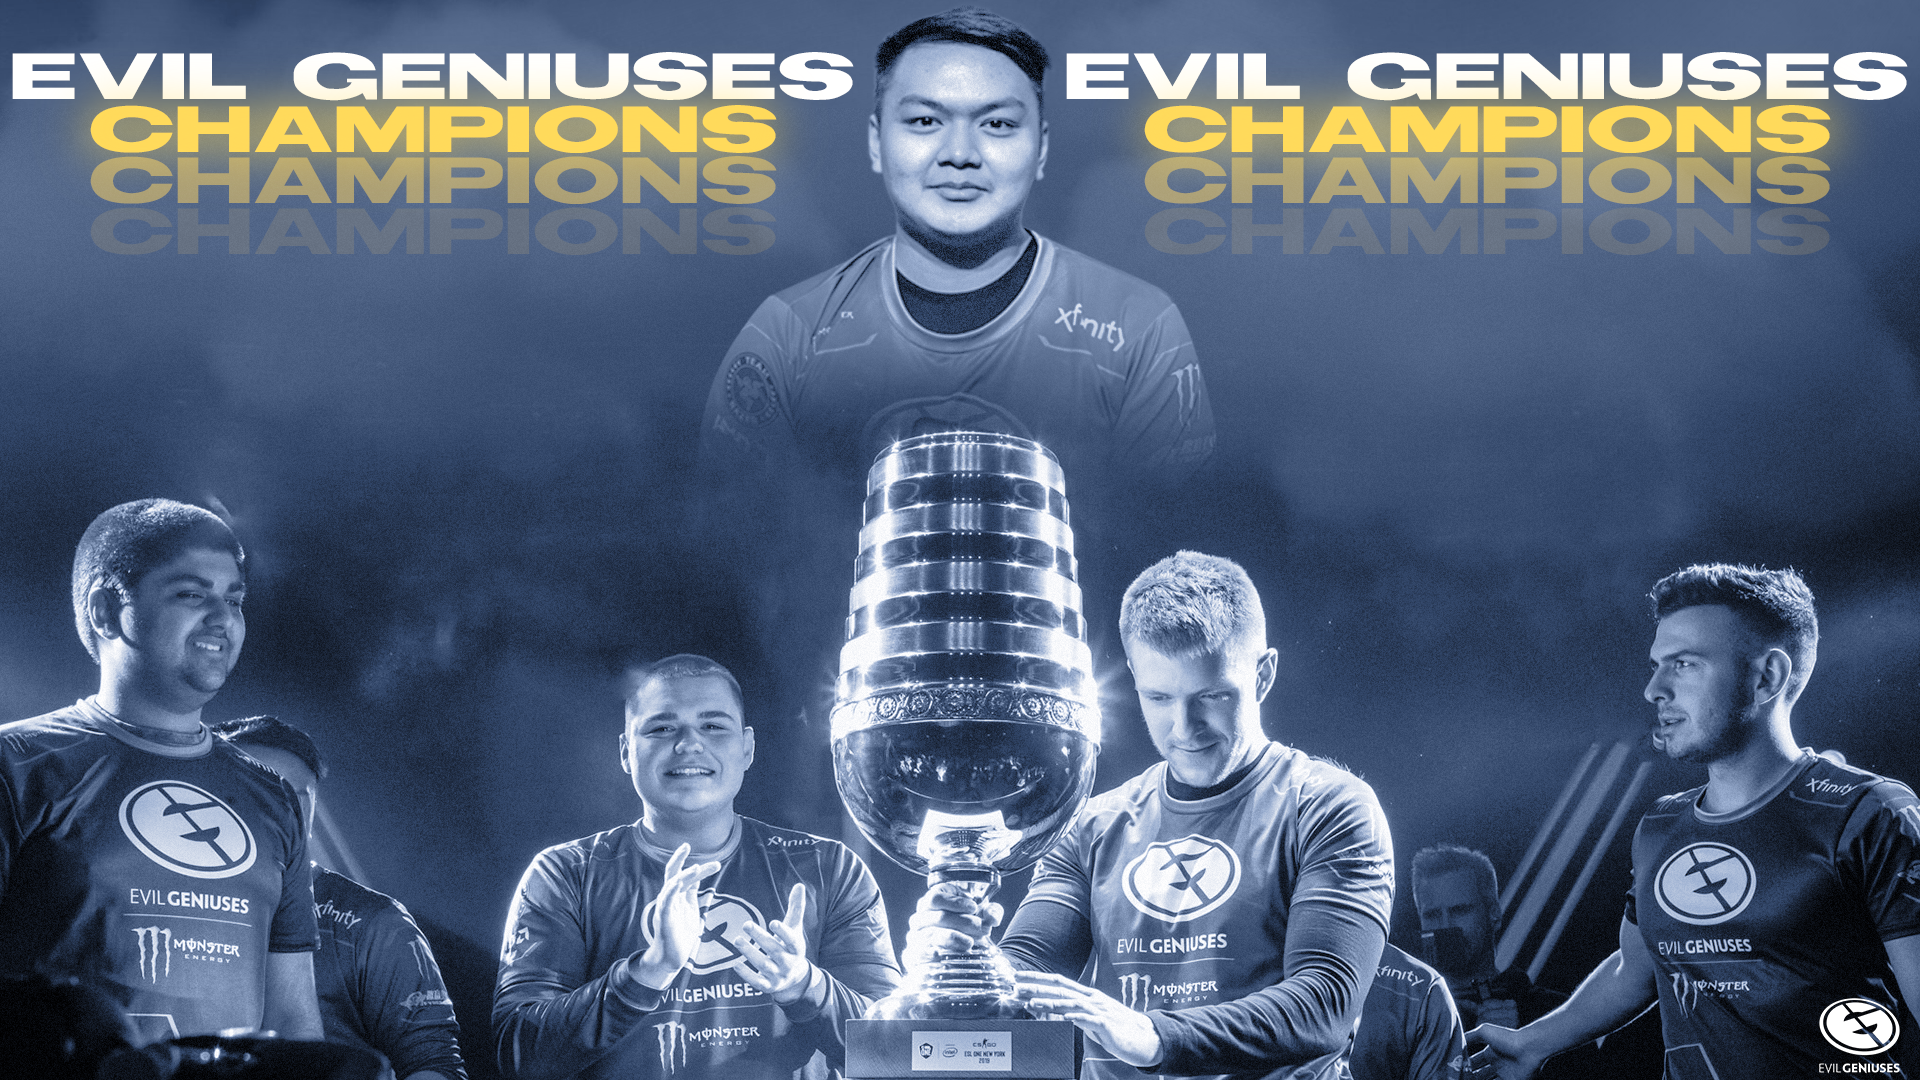 Evil Geniuses NY Champions created